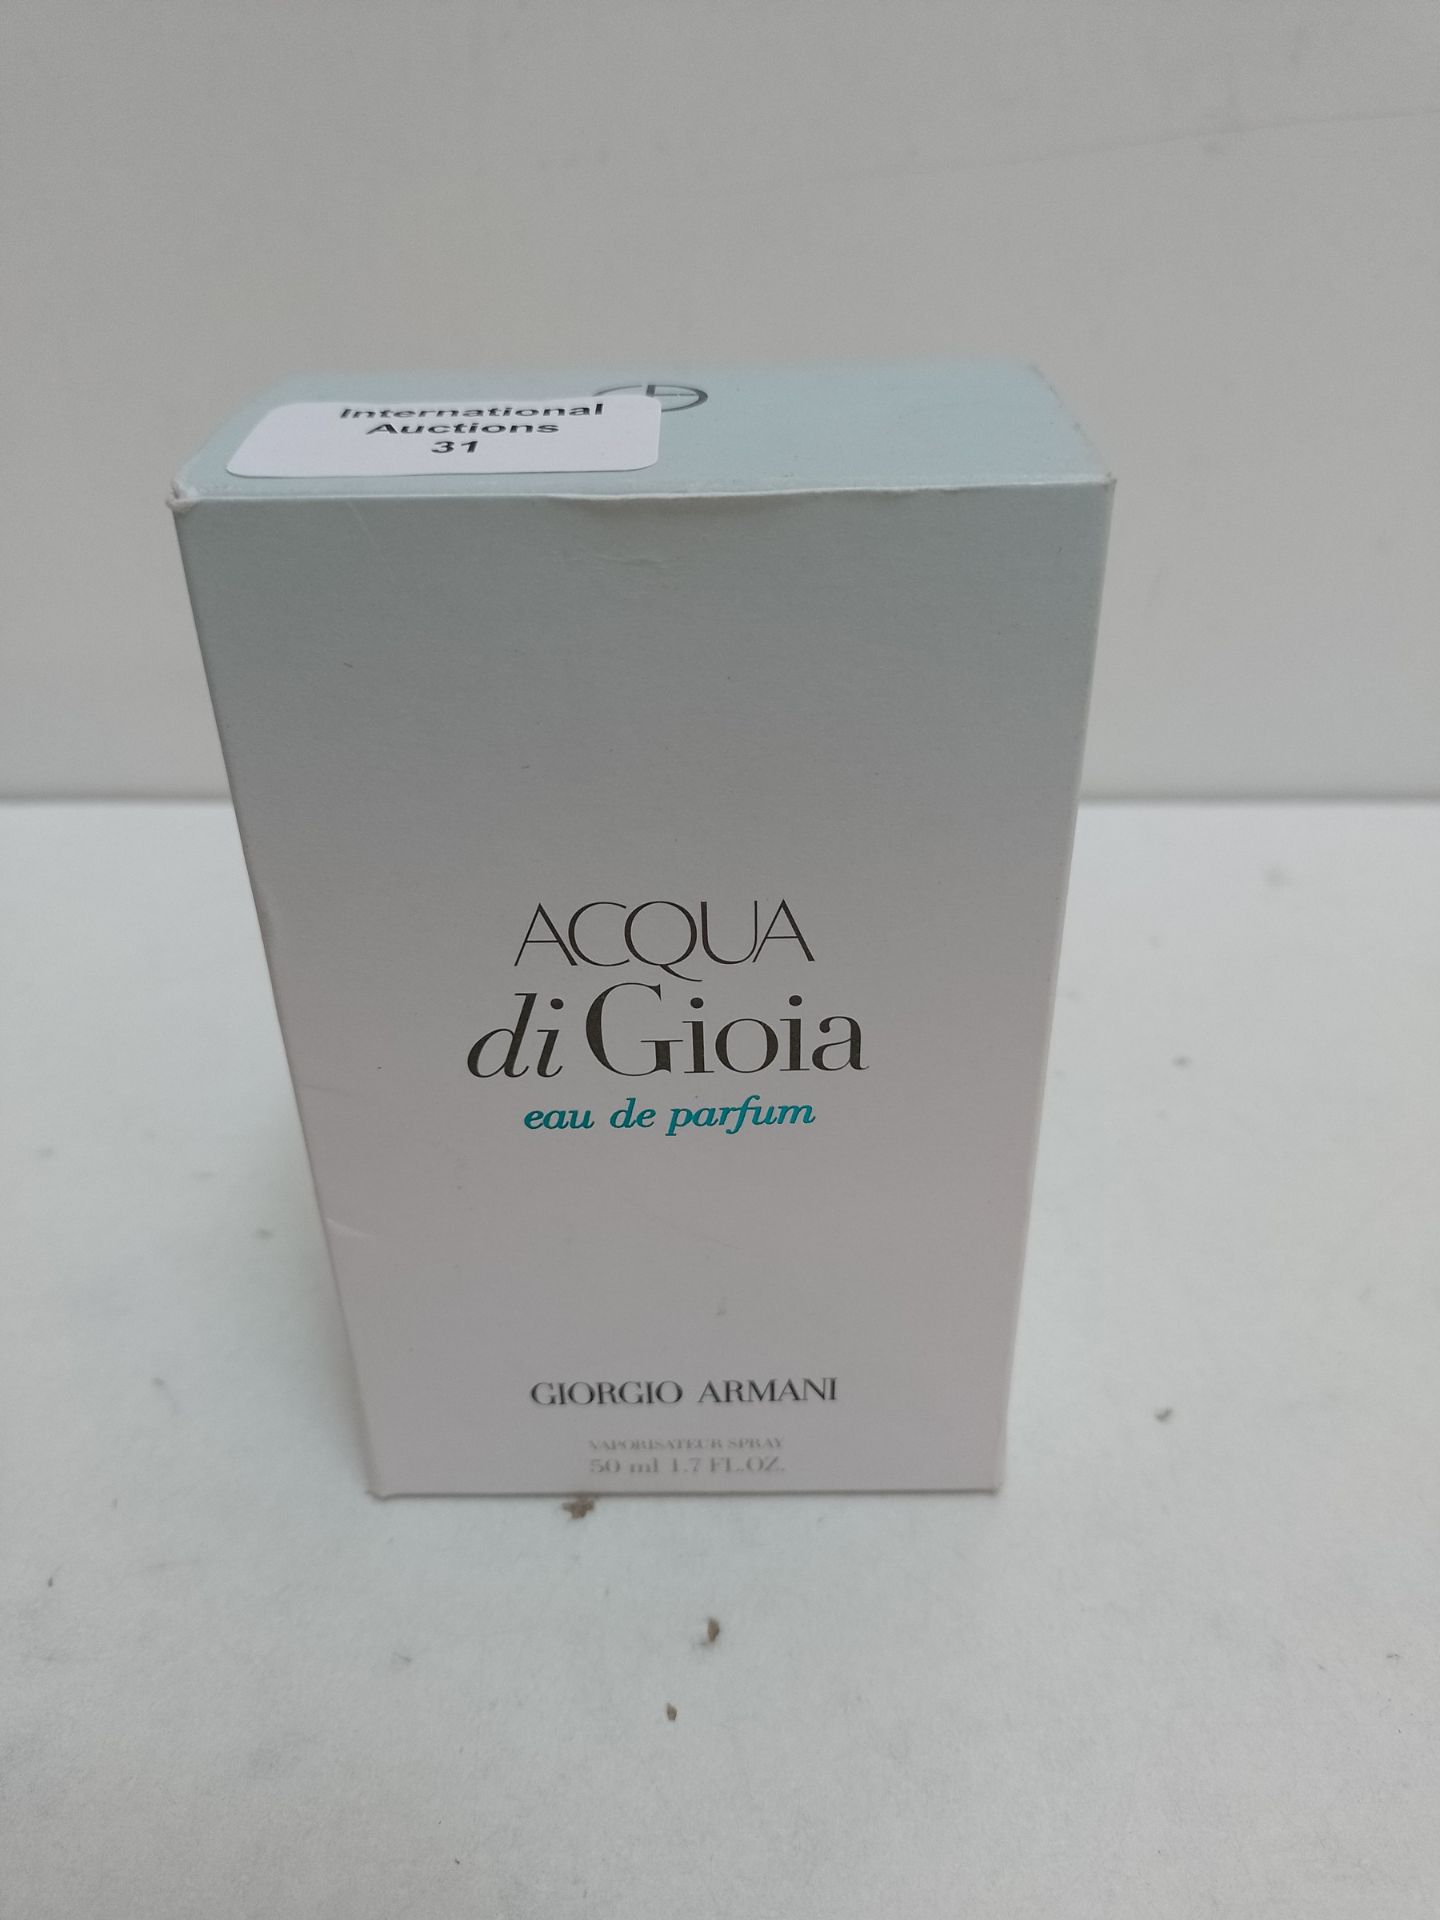 RRP £74.42 Acqua Di Gioia Femme Eau De Parfum Spray By Giorgio Armani 50ml - Image 2 of 2